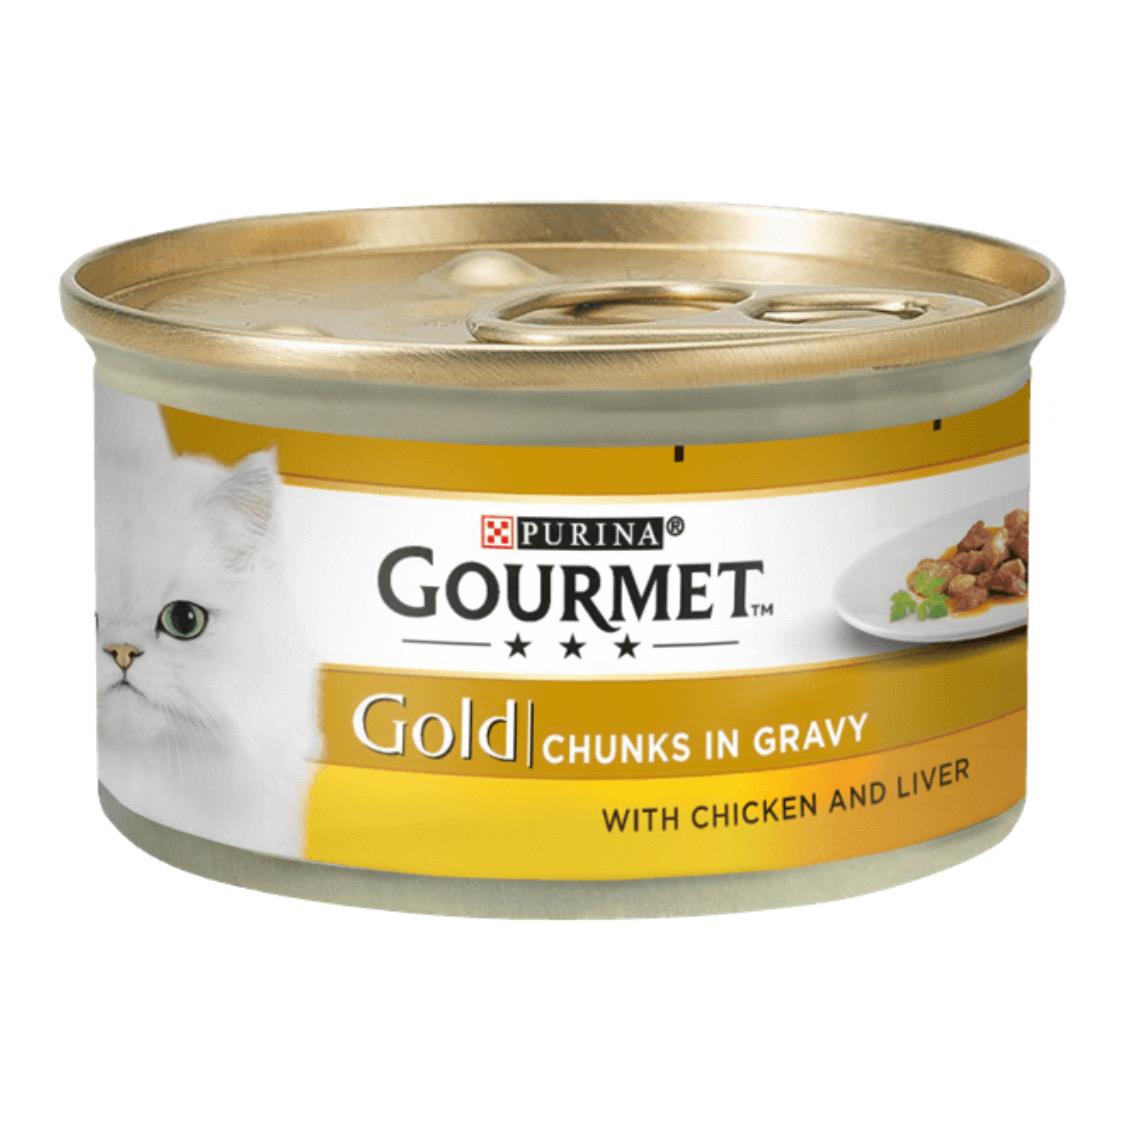 کنسرو غذای گربه پورینا مدل Gourmet کد CHL03 وزن 85 گرم